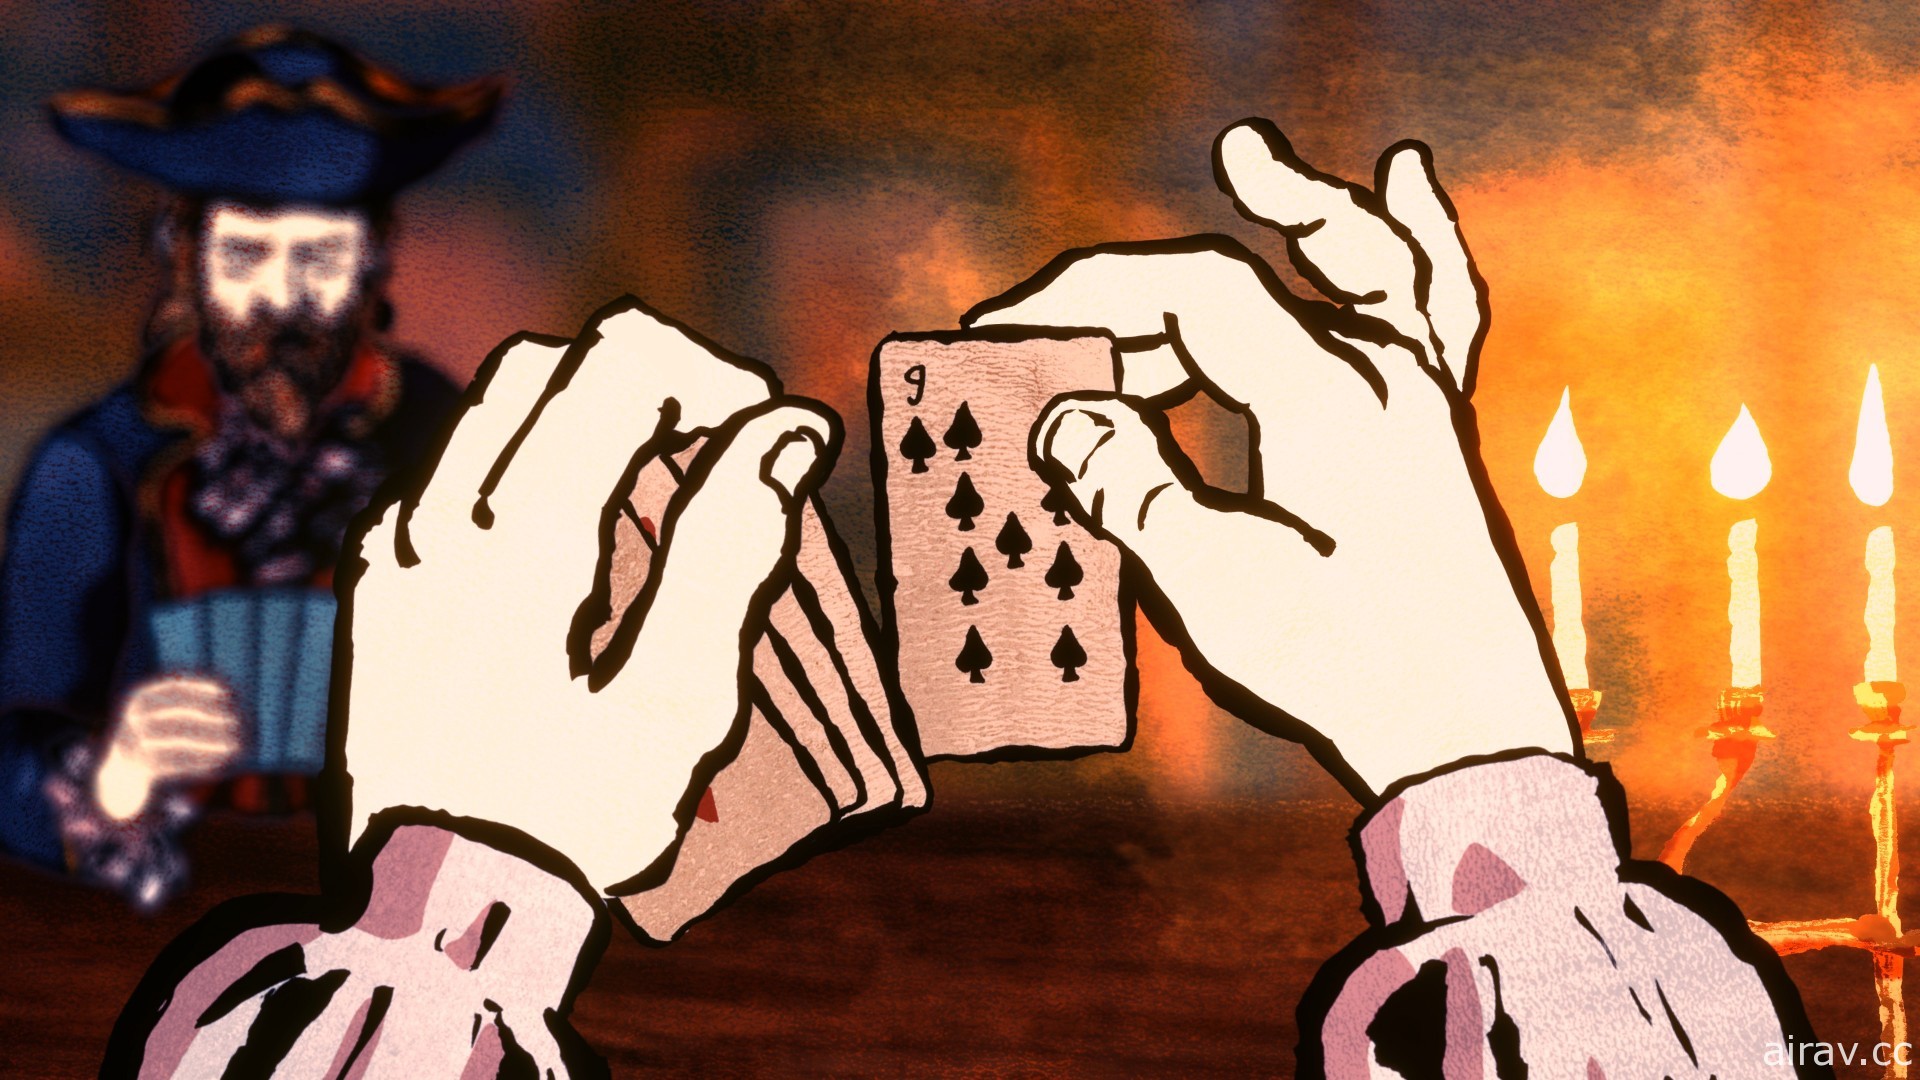 《王權 Reigns》團隊新作《王牌卡神 Card Shark》即將發行 展開中世紀歐洲冒險賭局